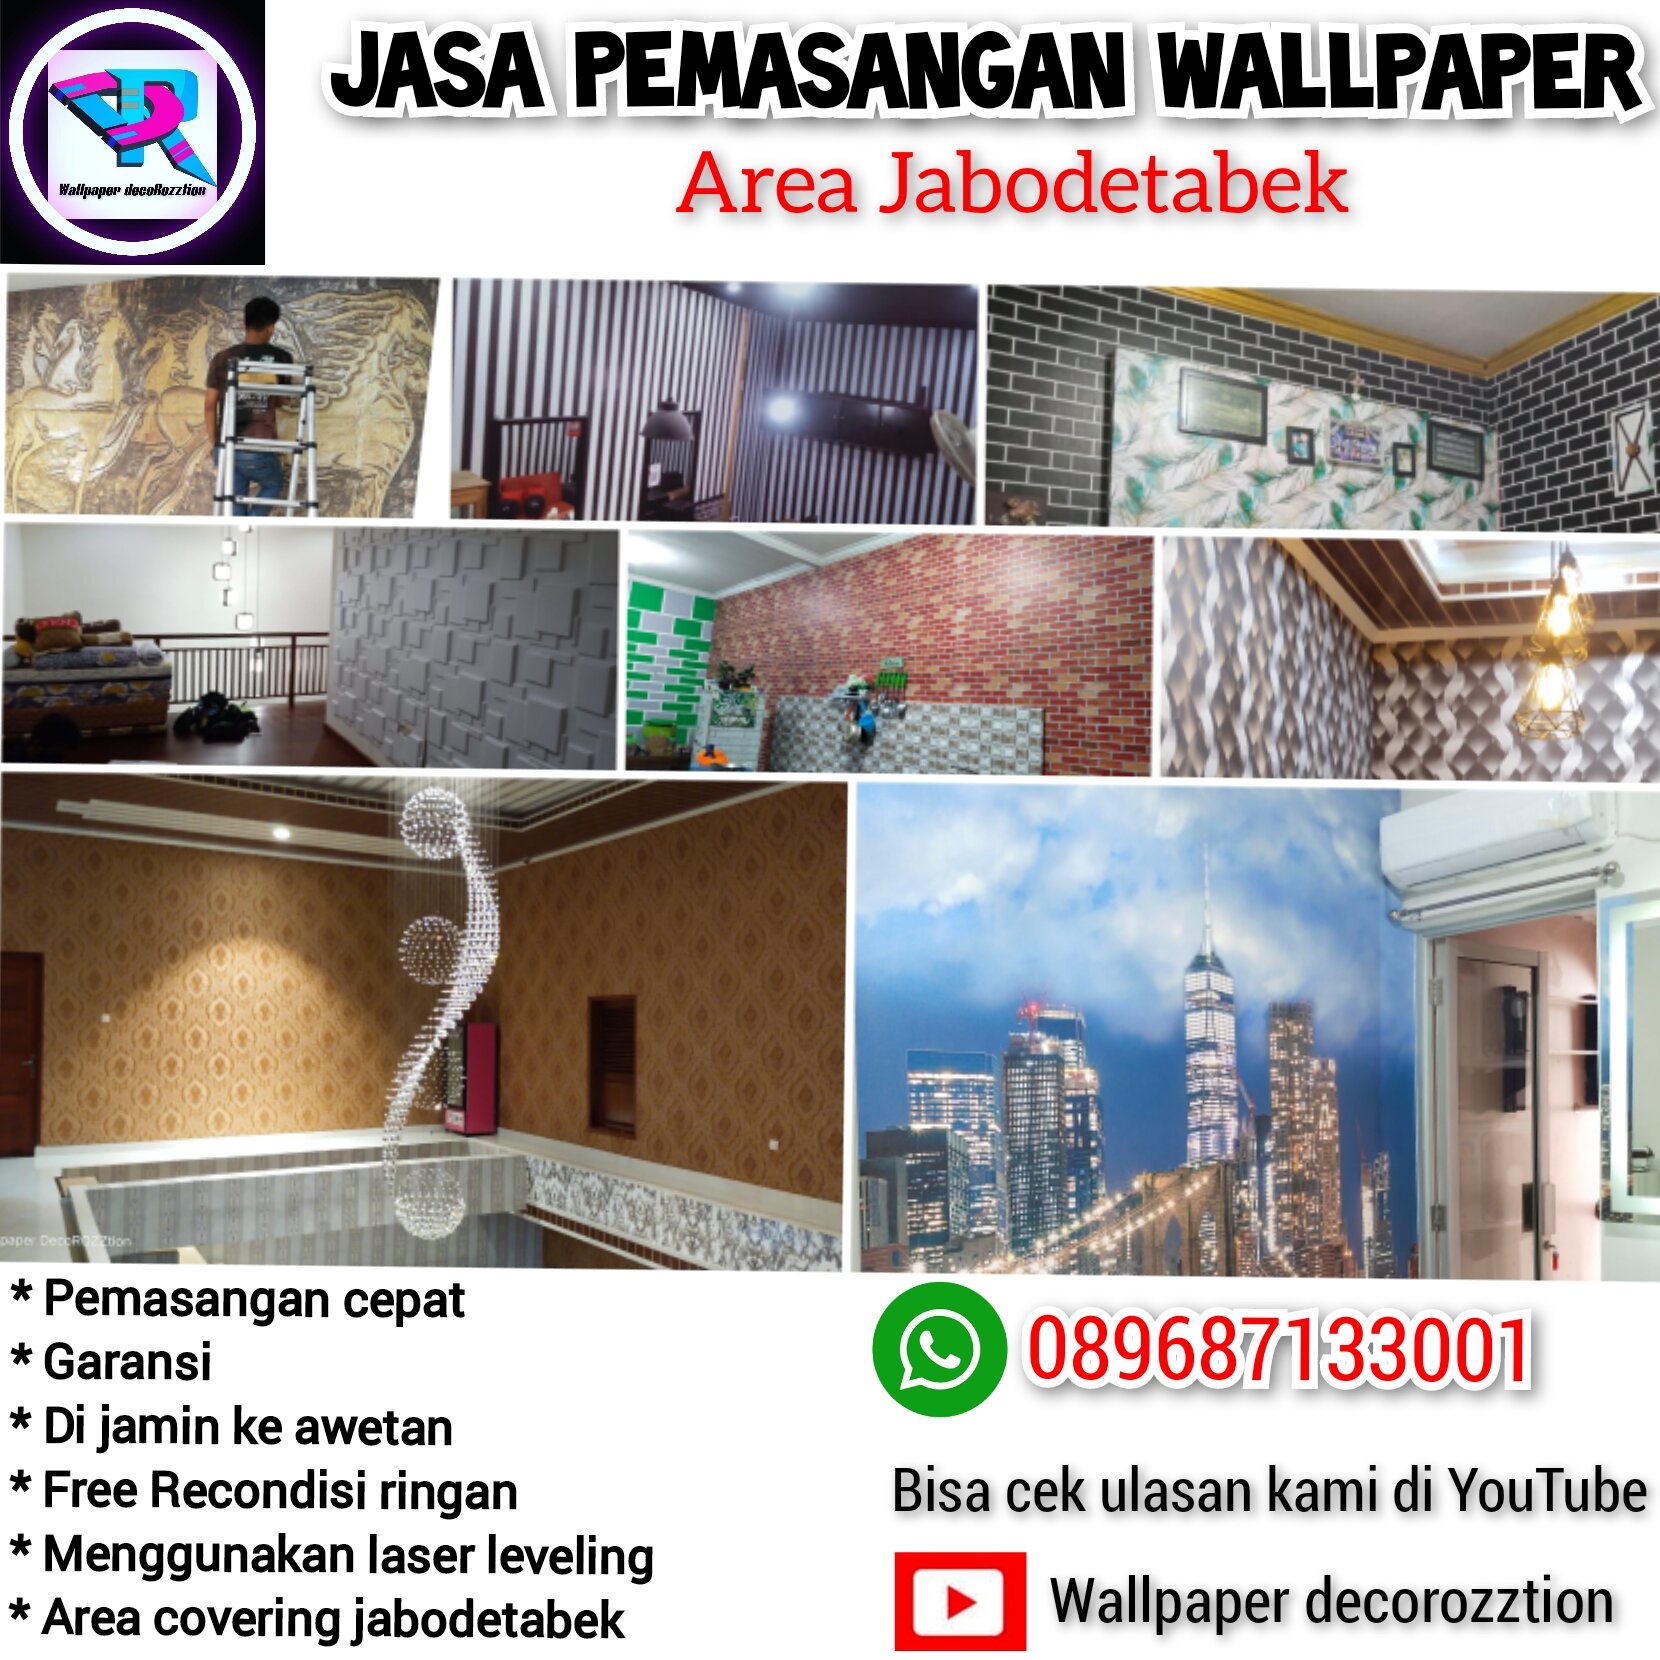 Jasa Pasang Wallpaper untuk Interior Rumah Makin Cantik di Malang   TribunJualBelicom